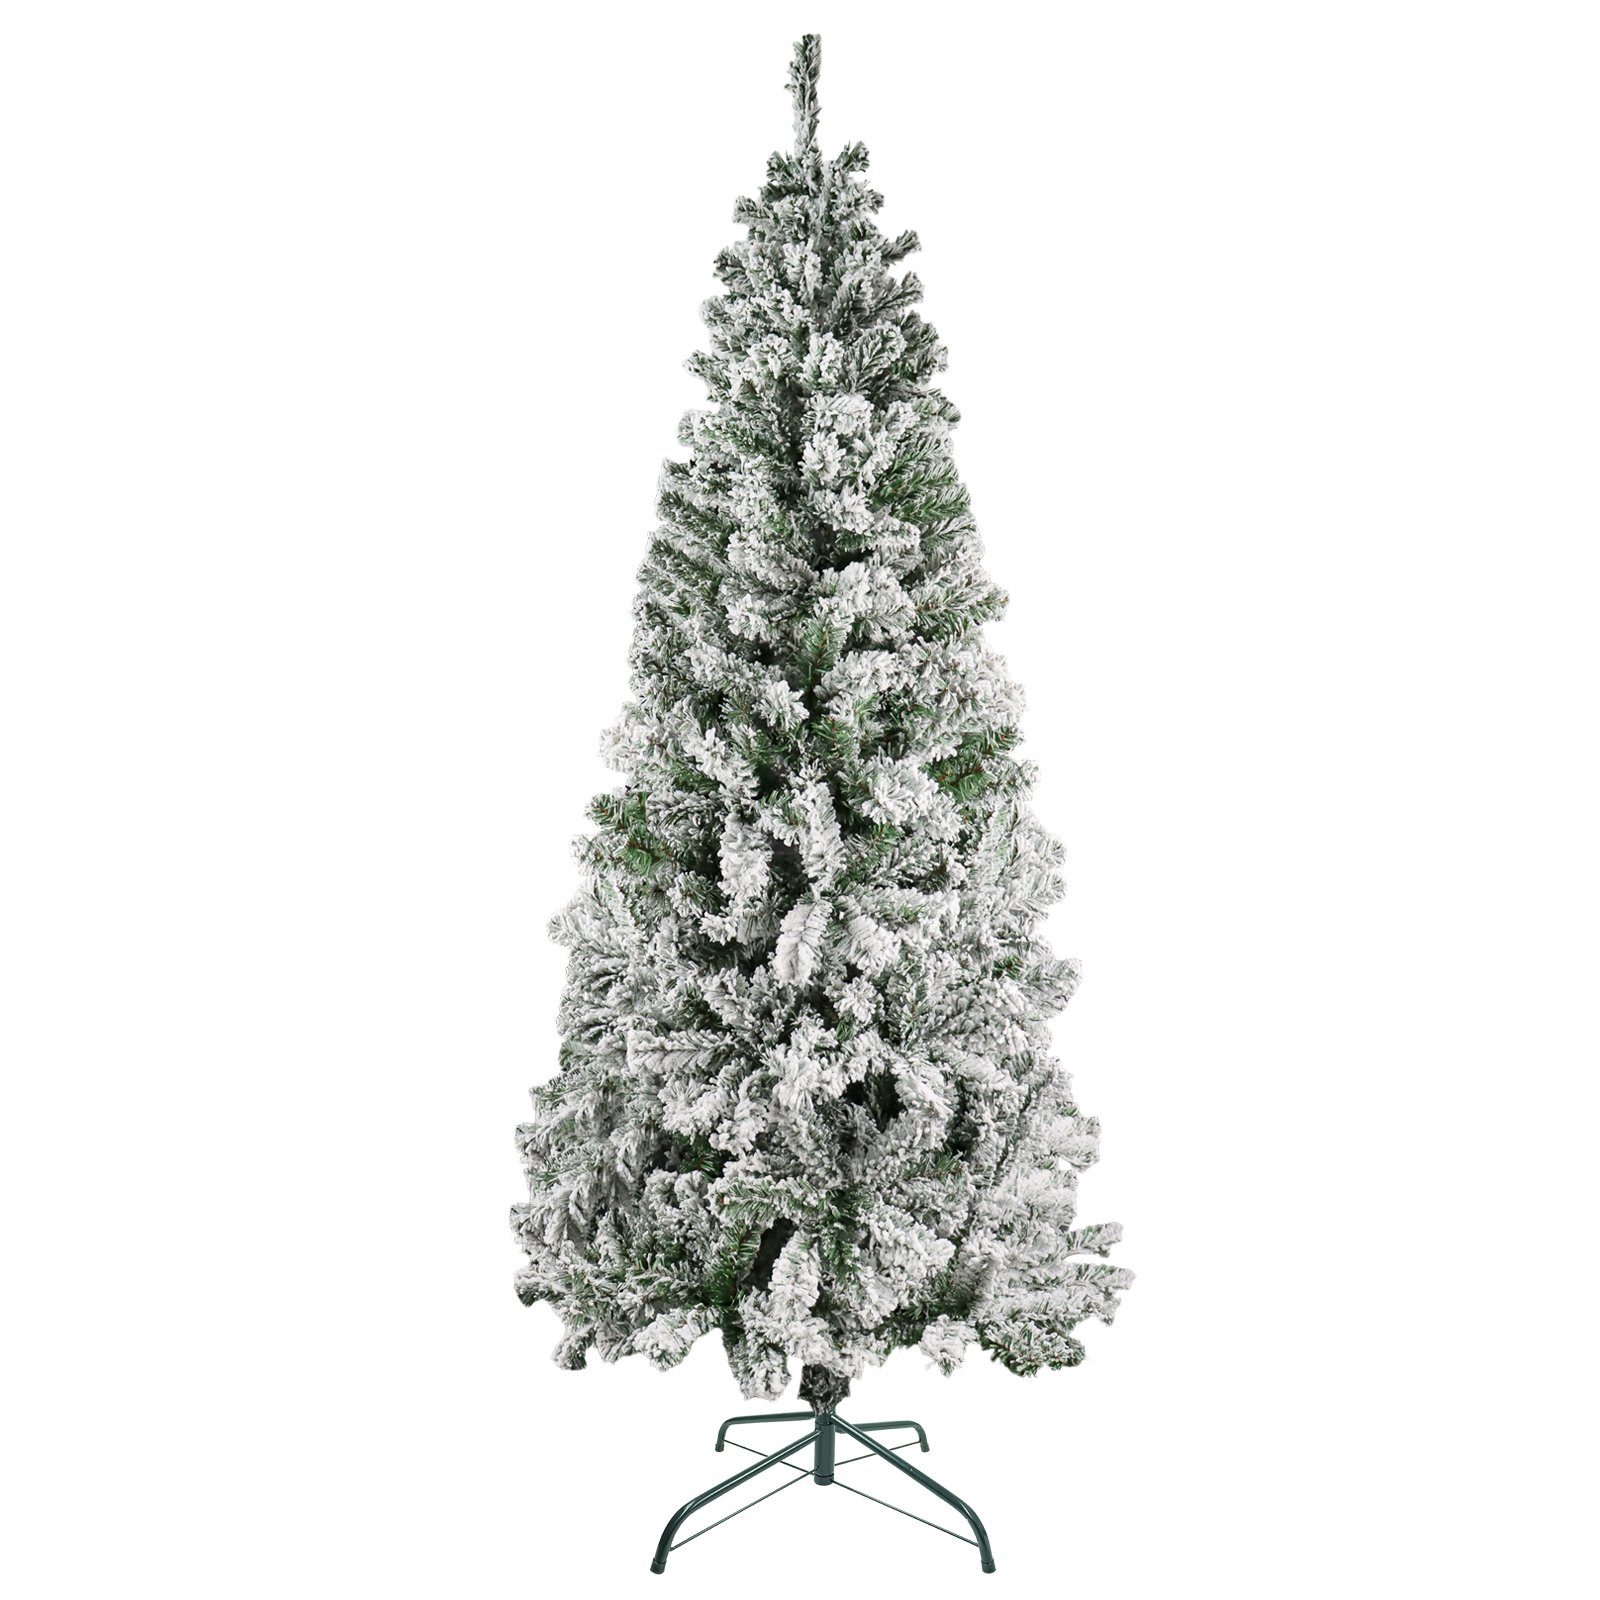 mit SunJas Tannenbaum Weihnachtsbaum XM-2(57-59), Tannenbaum Künstlicher Weihnachtsbäume Ständer,Christbaum